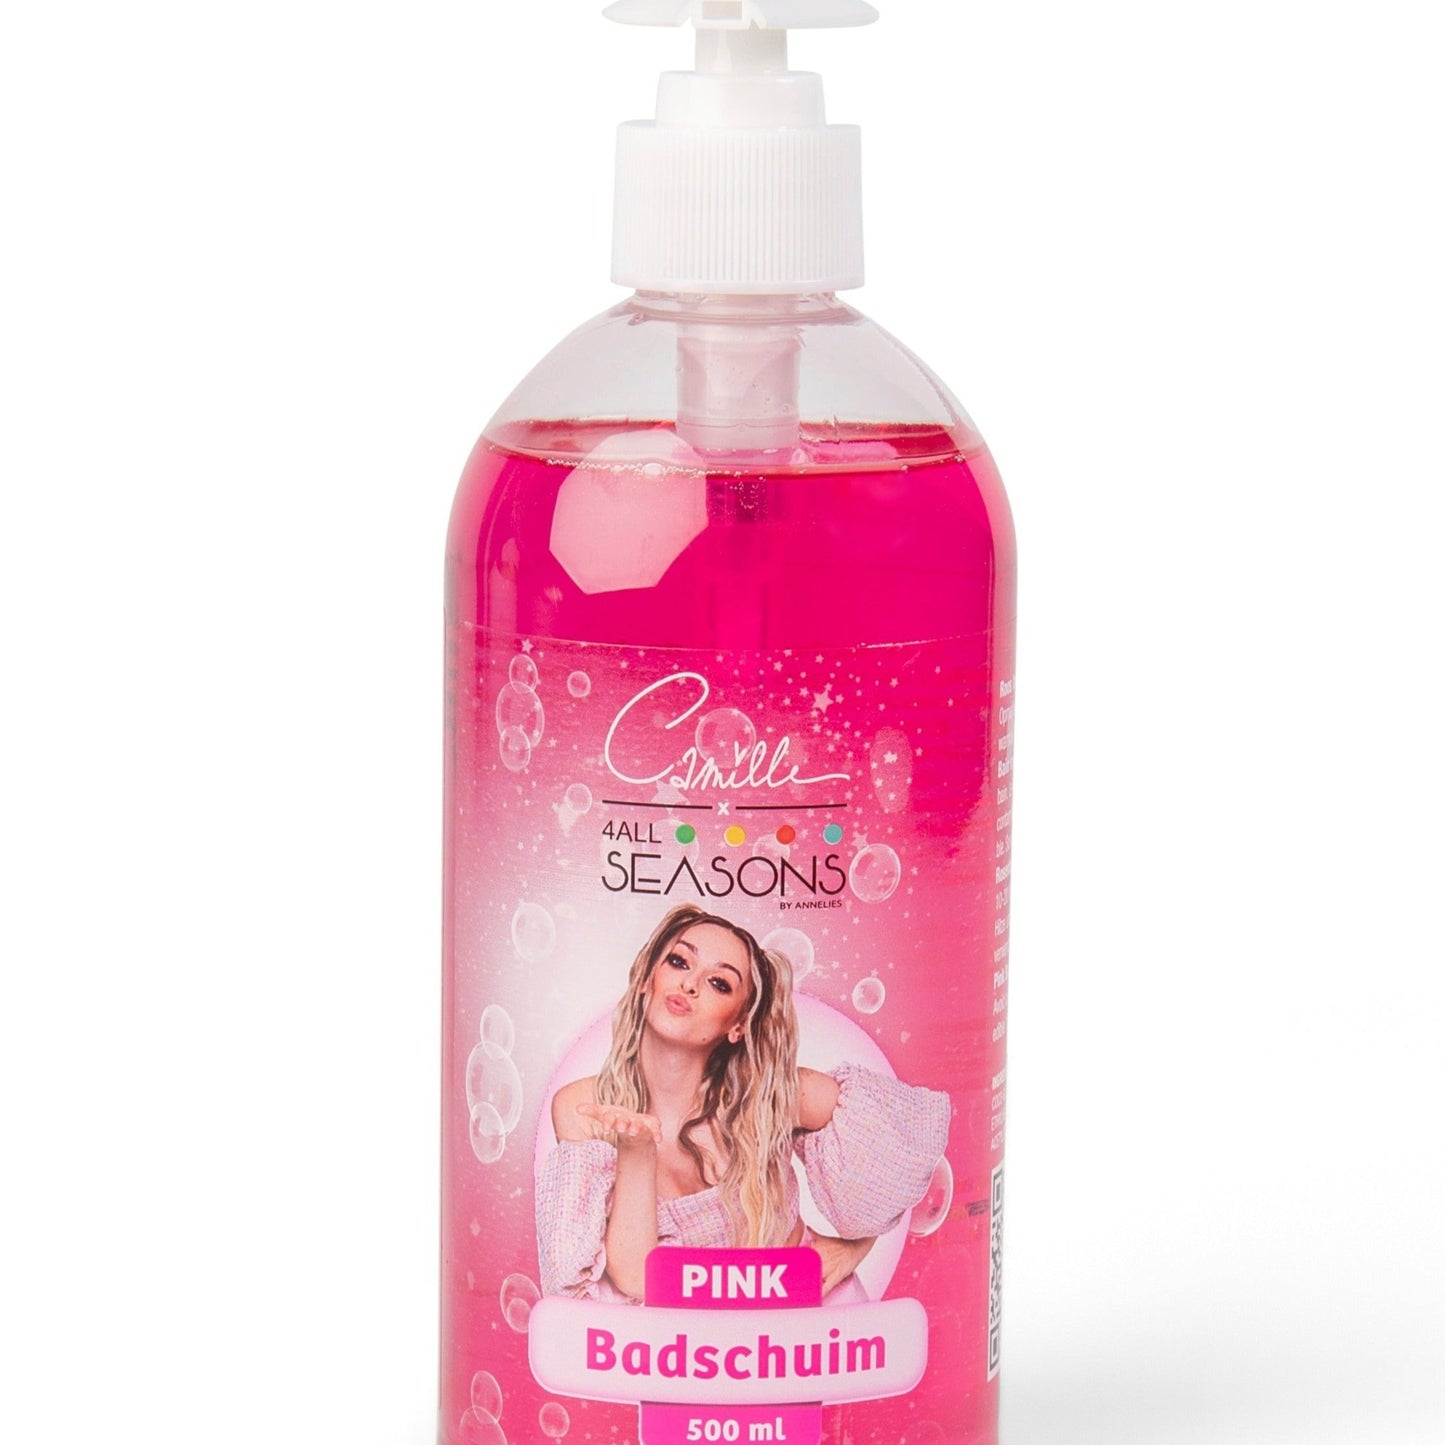 Badschuim Pink Camille 500ml